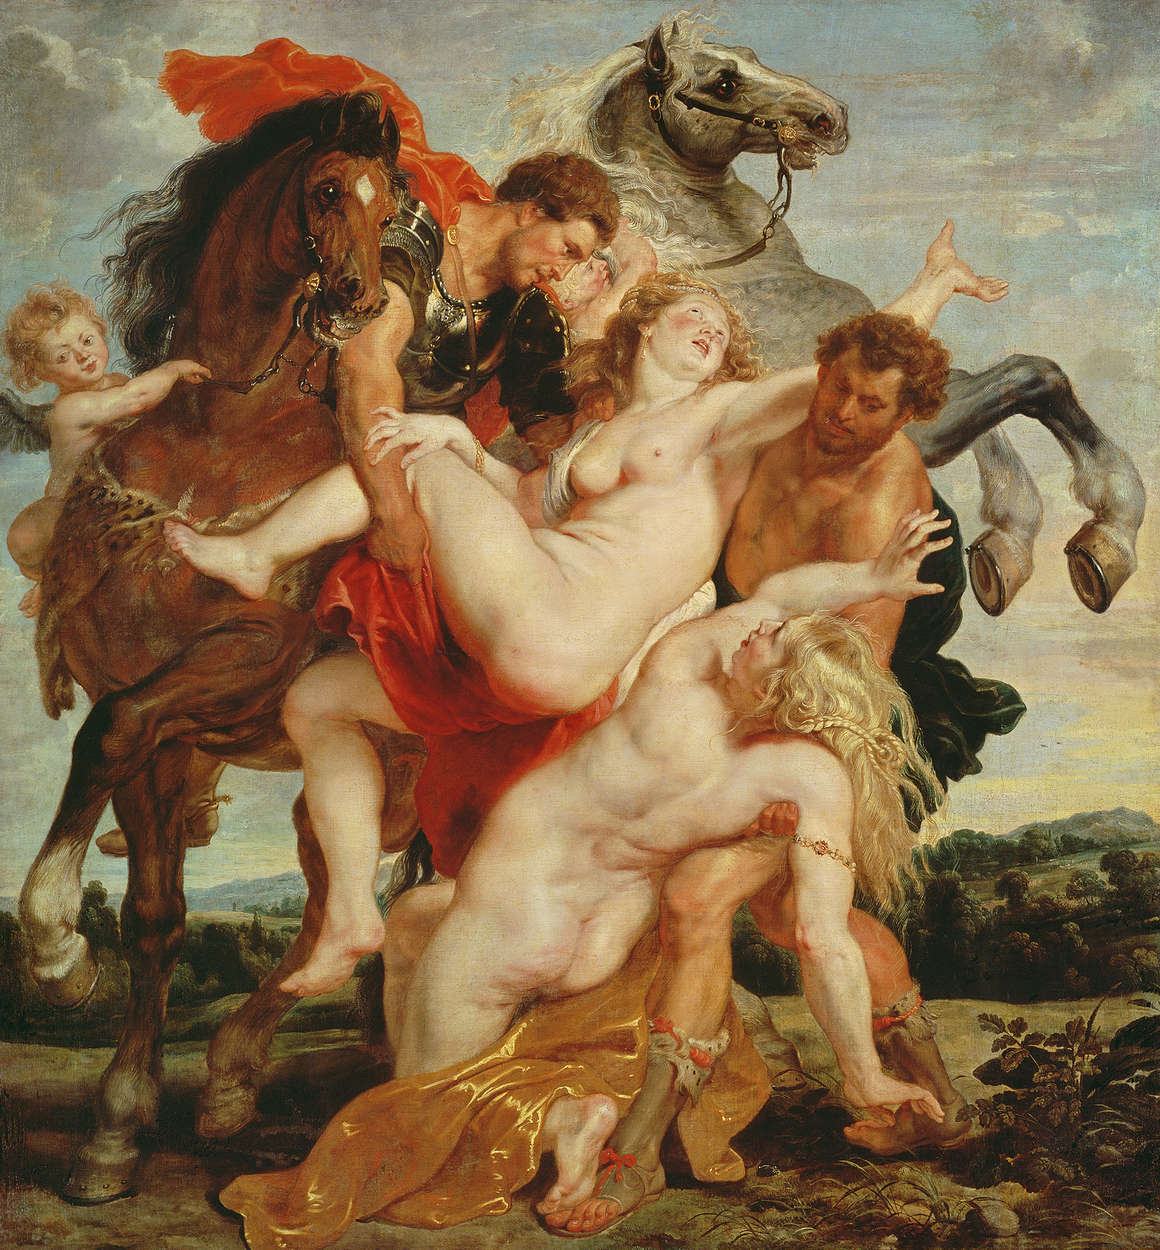             Fototapete "Raub der Töchter des Leukippus" von Peter Paul Rubens
        